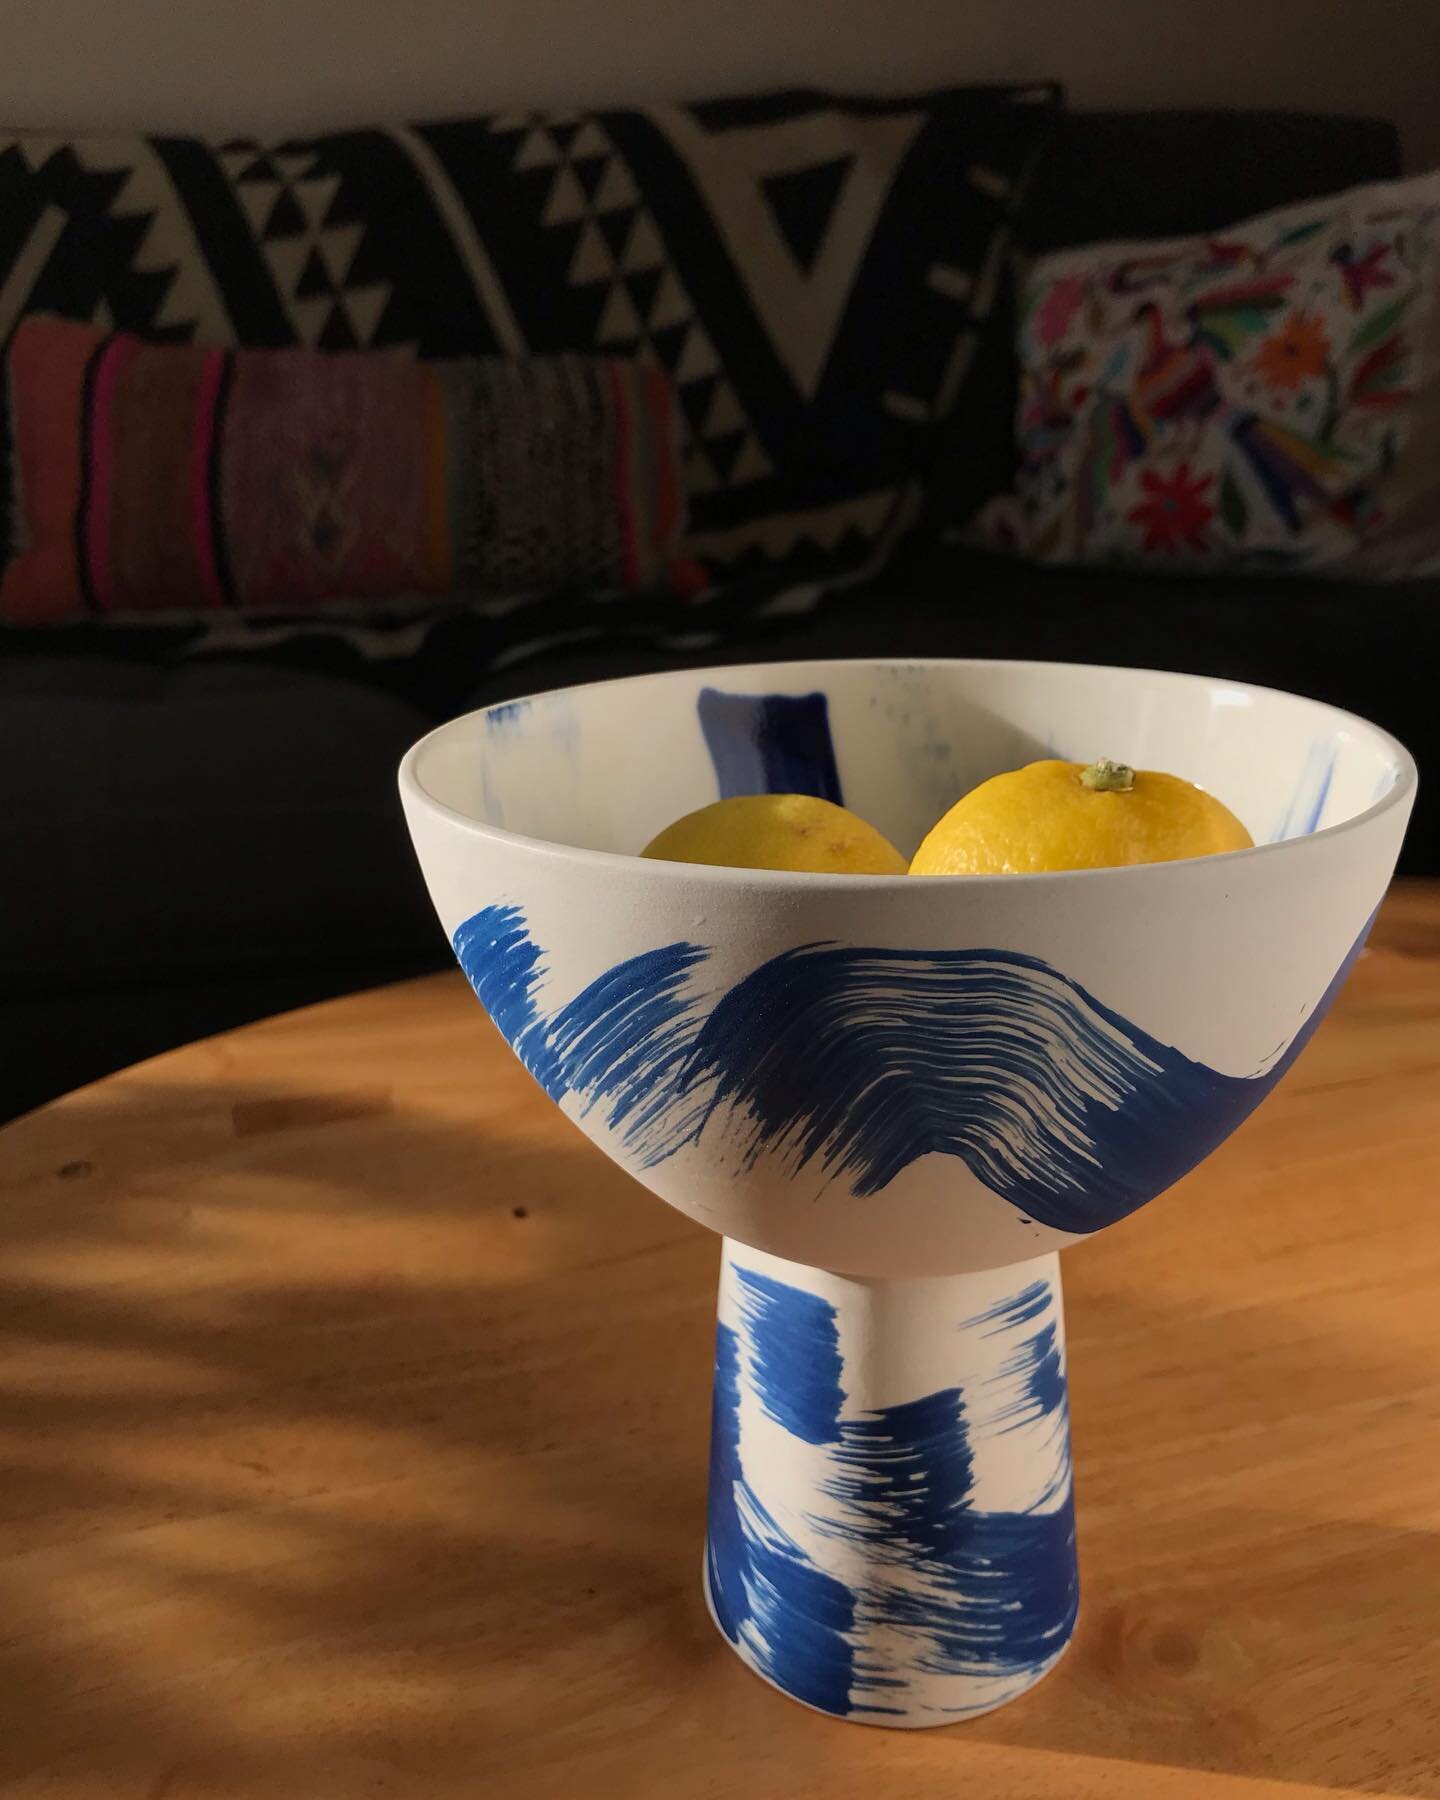 Wave bowl

#alanalaurenceramics 
#contemporaryceramics 
#porcelain 
#ceramics 
#ceramicvessel 
#homedecor